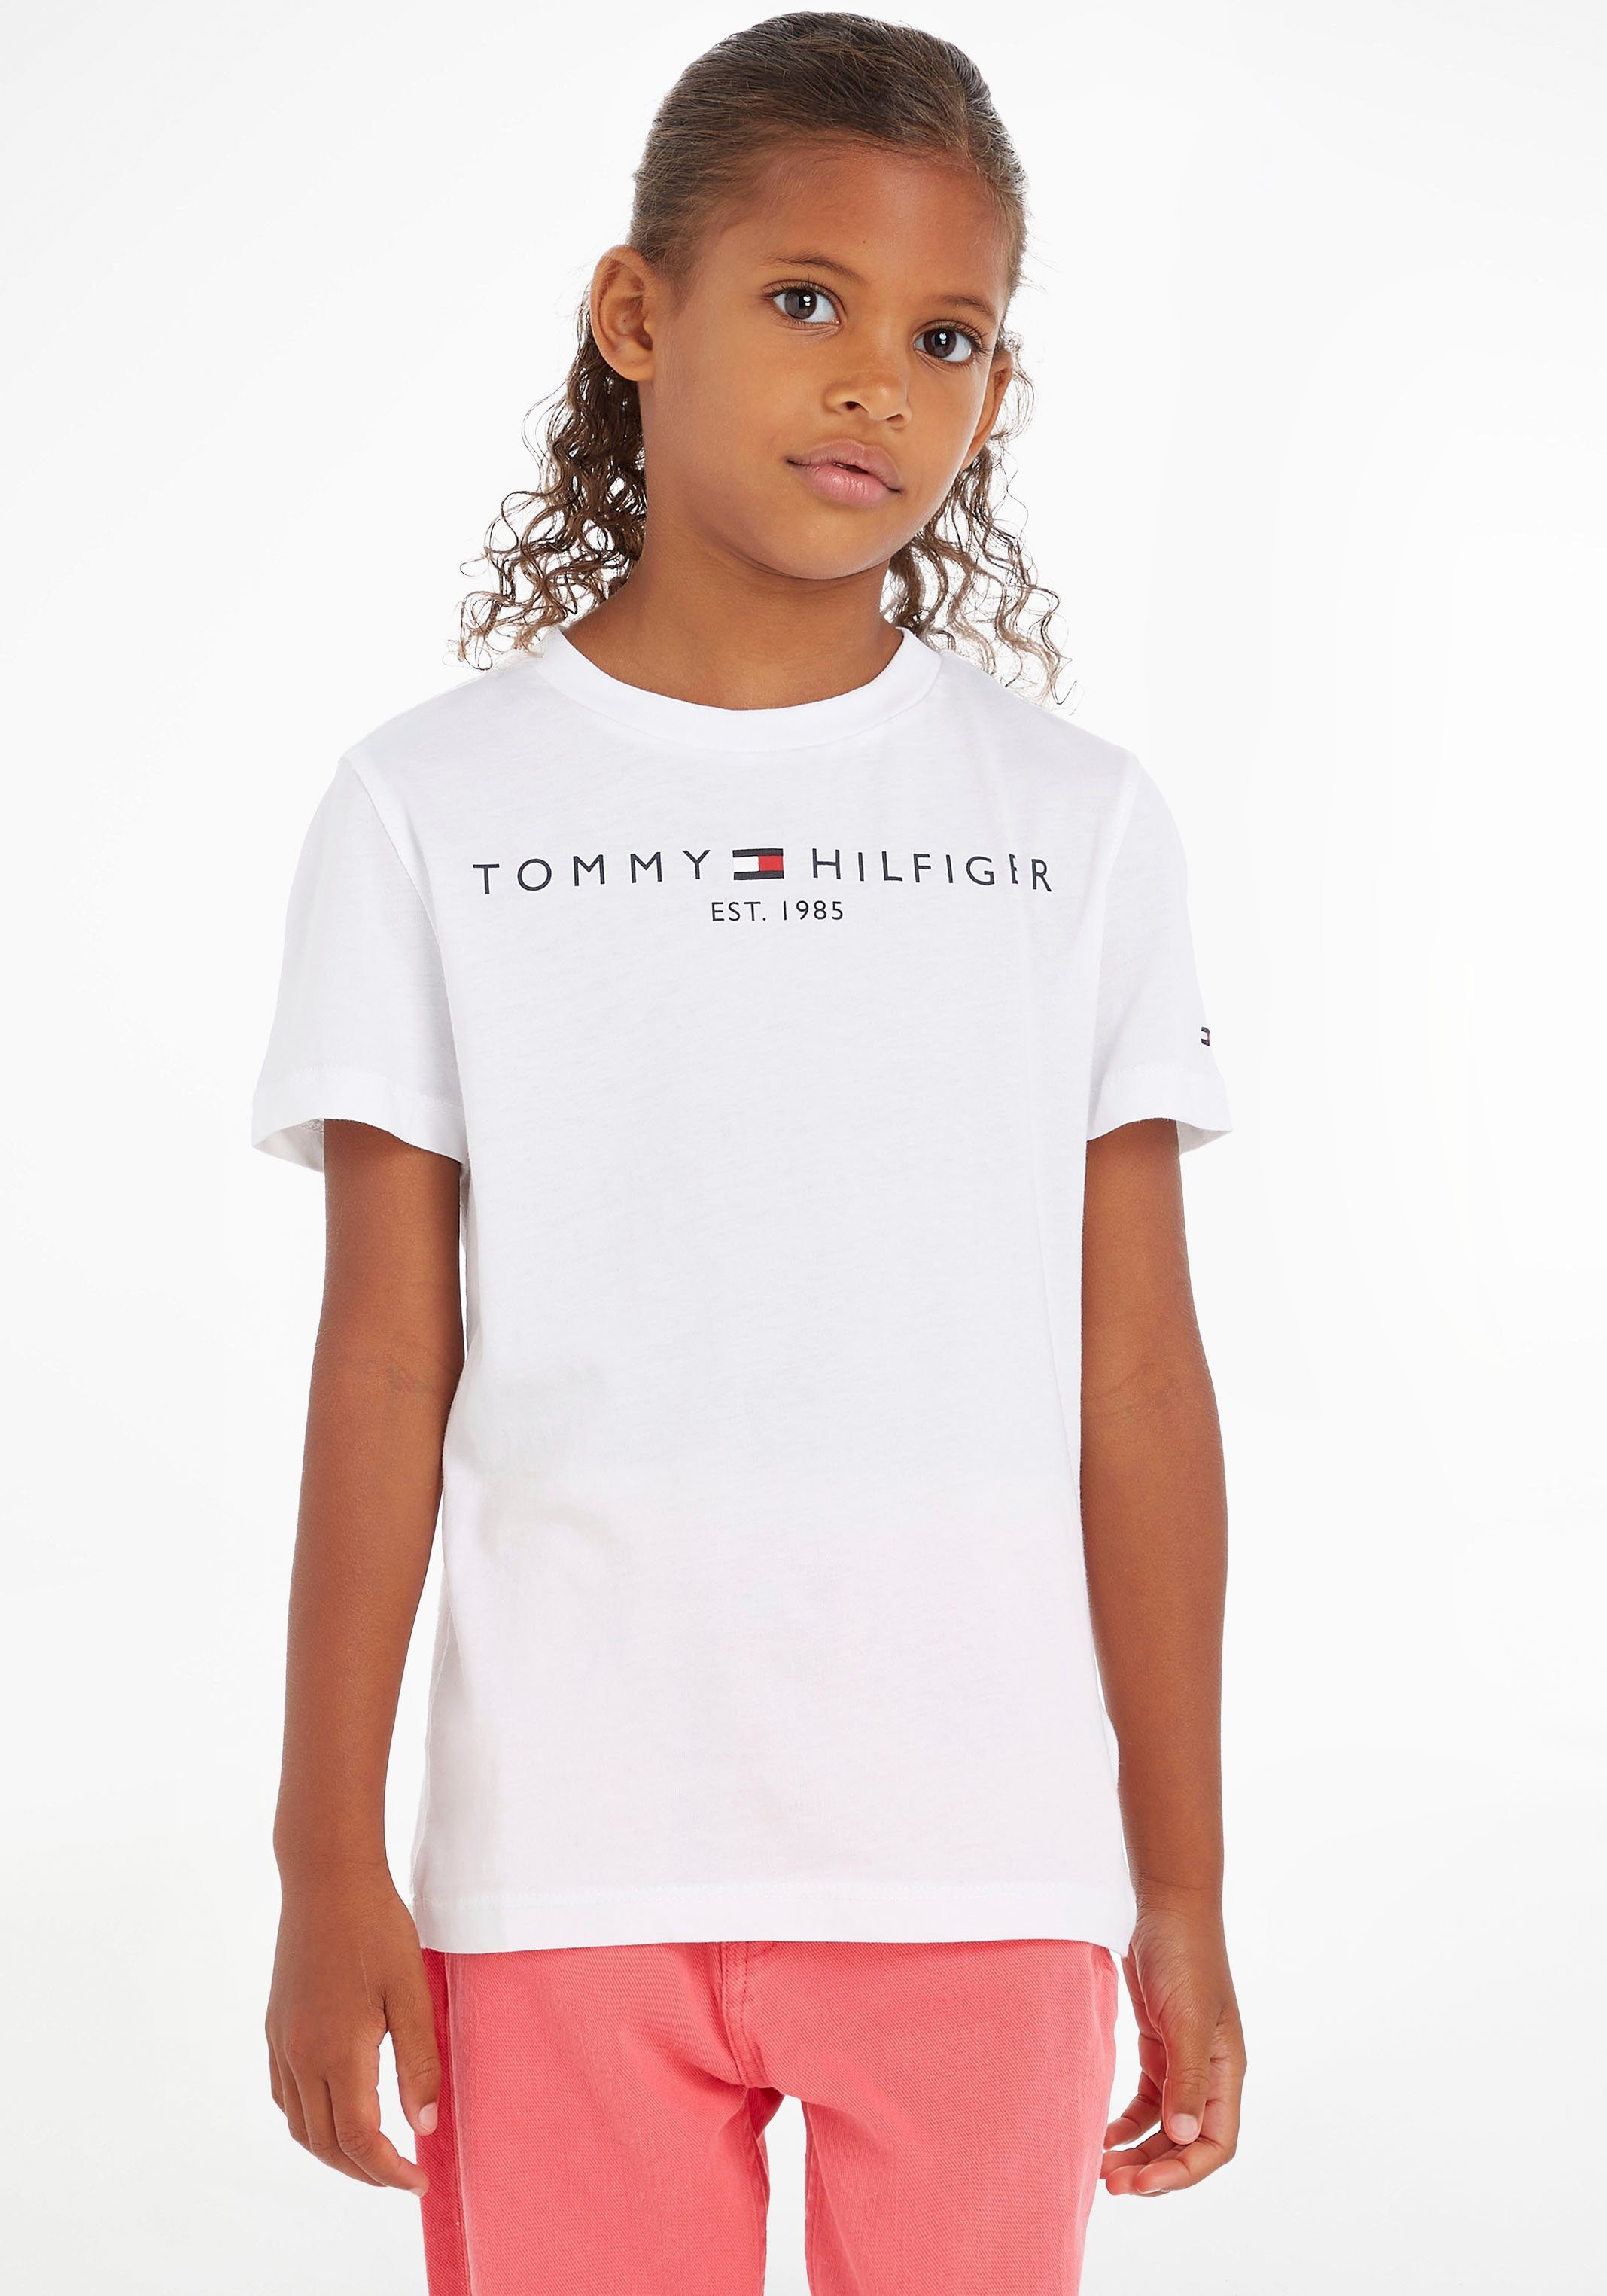 Mädchen Jungen ESSENTIAL Hilfiger Kinder Junior TEE Kids und Tommy MiniMe,für T-Shirt